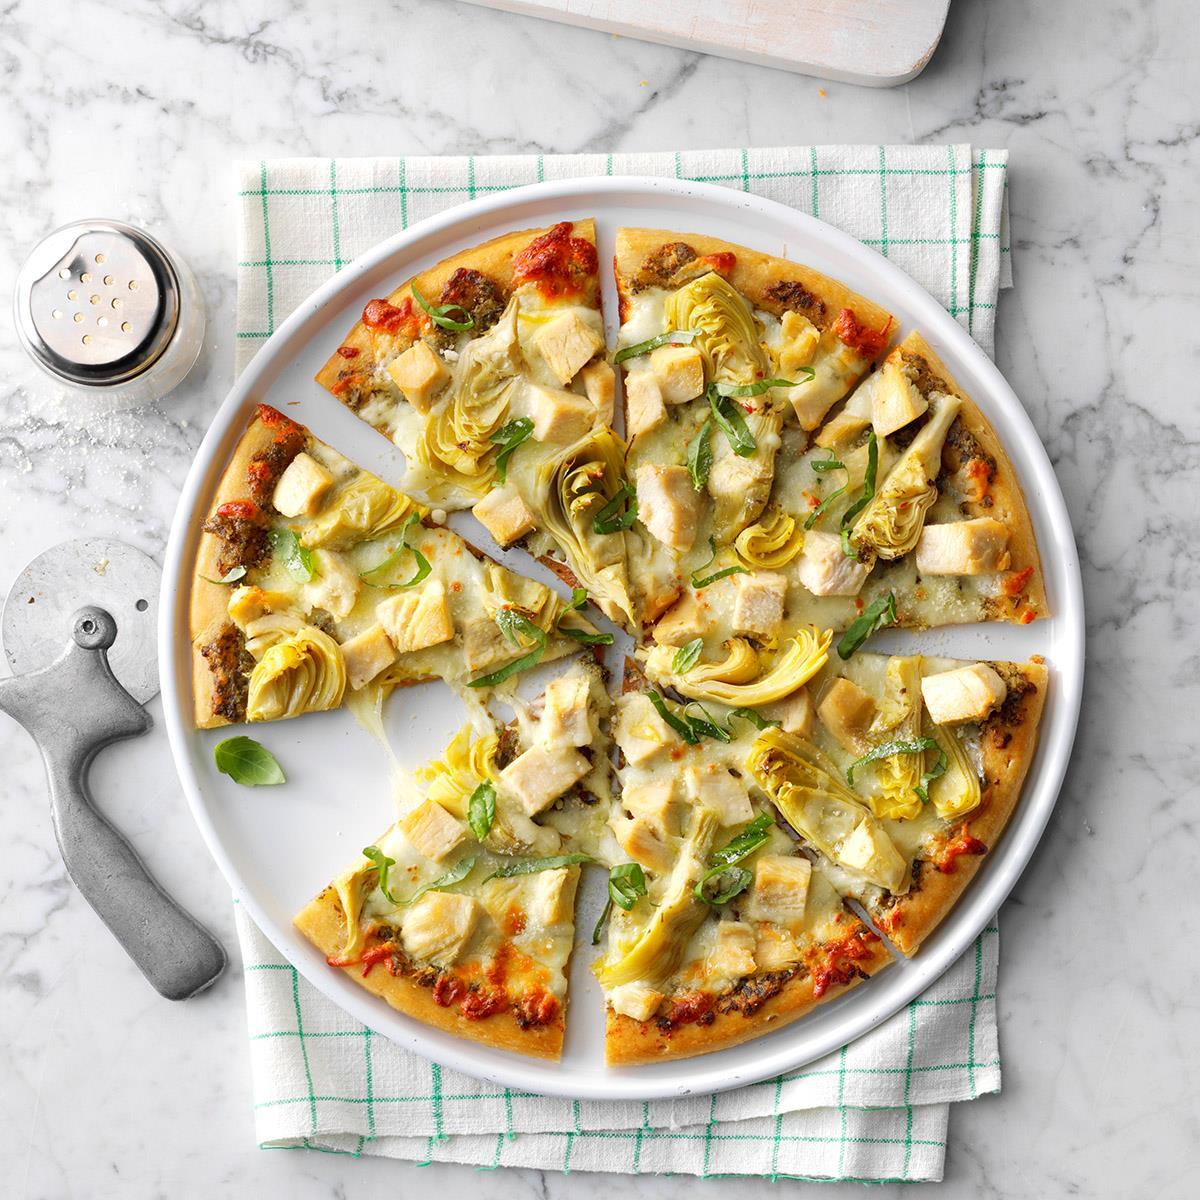 Artichoke Chicken Pesto Pizza Recipe How To Make It Taste Of Home